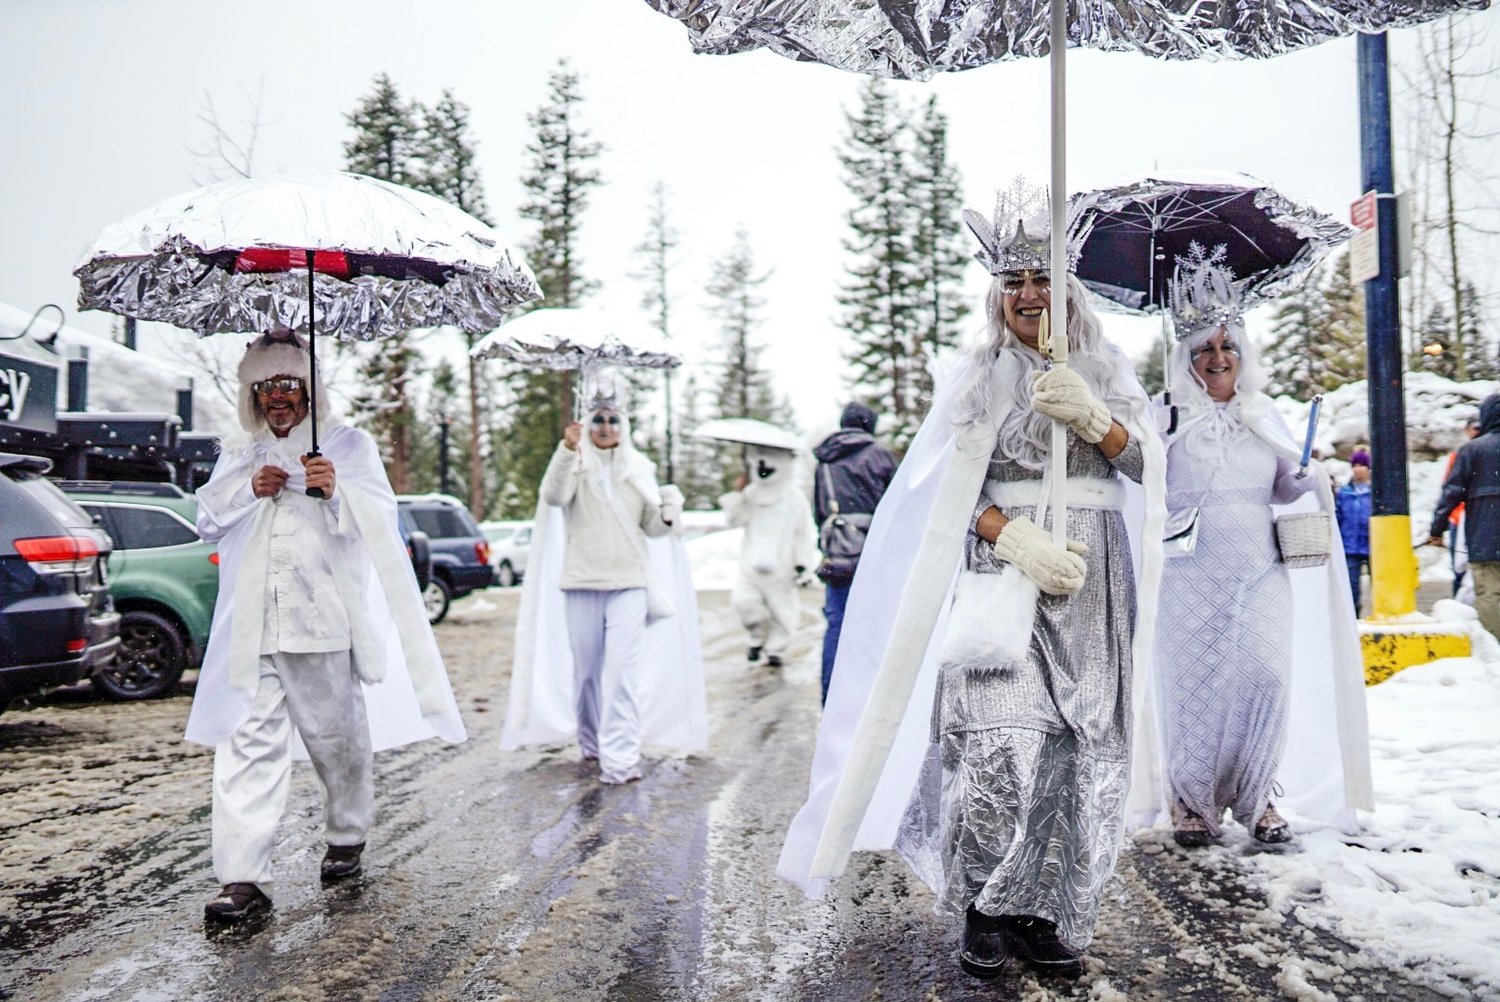 Tahoe Annual Snowfest 2020